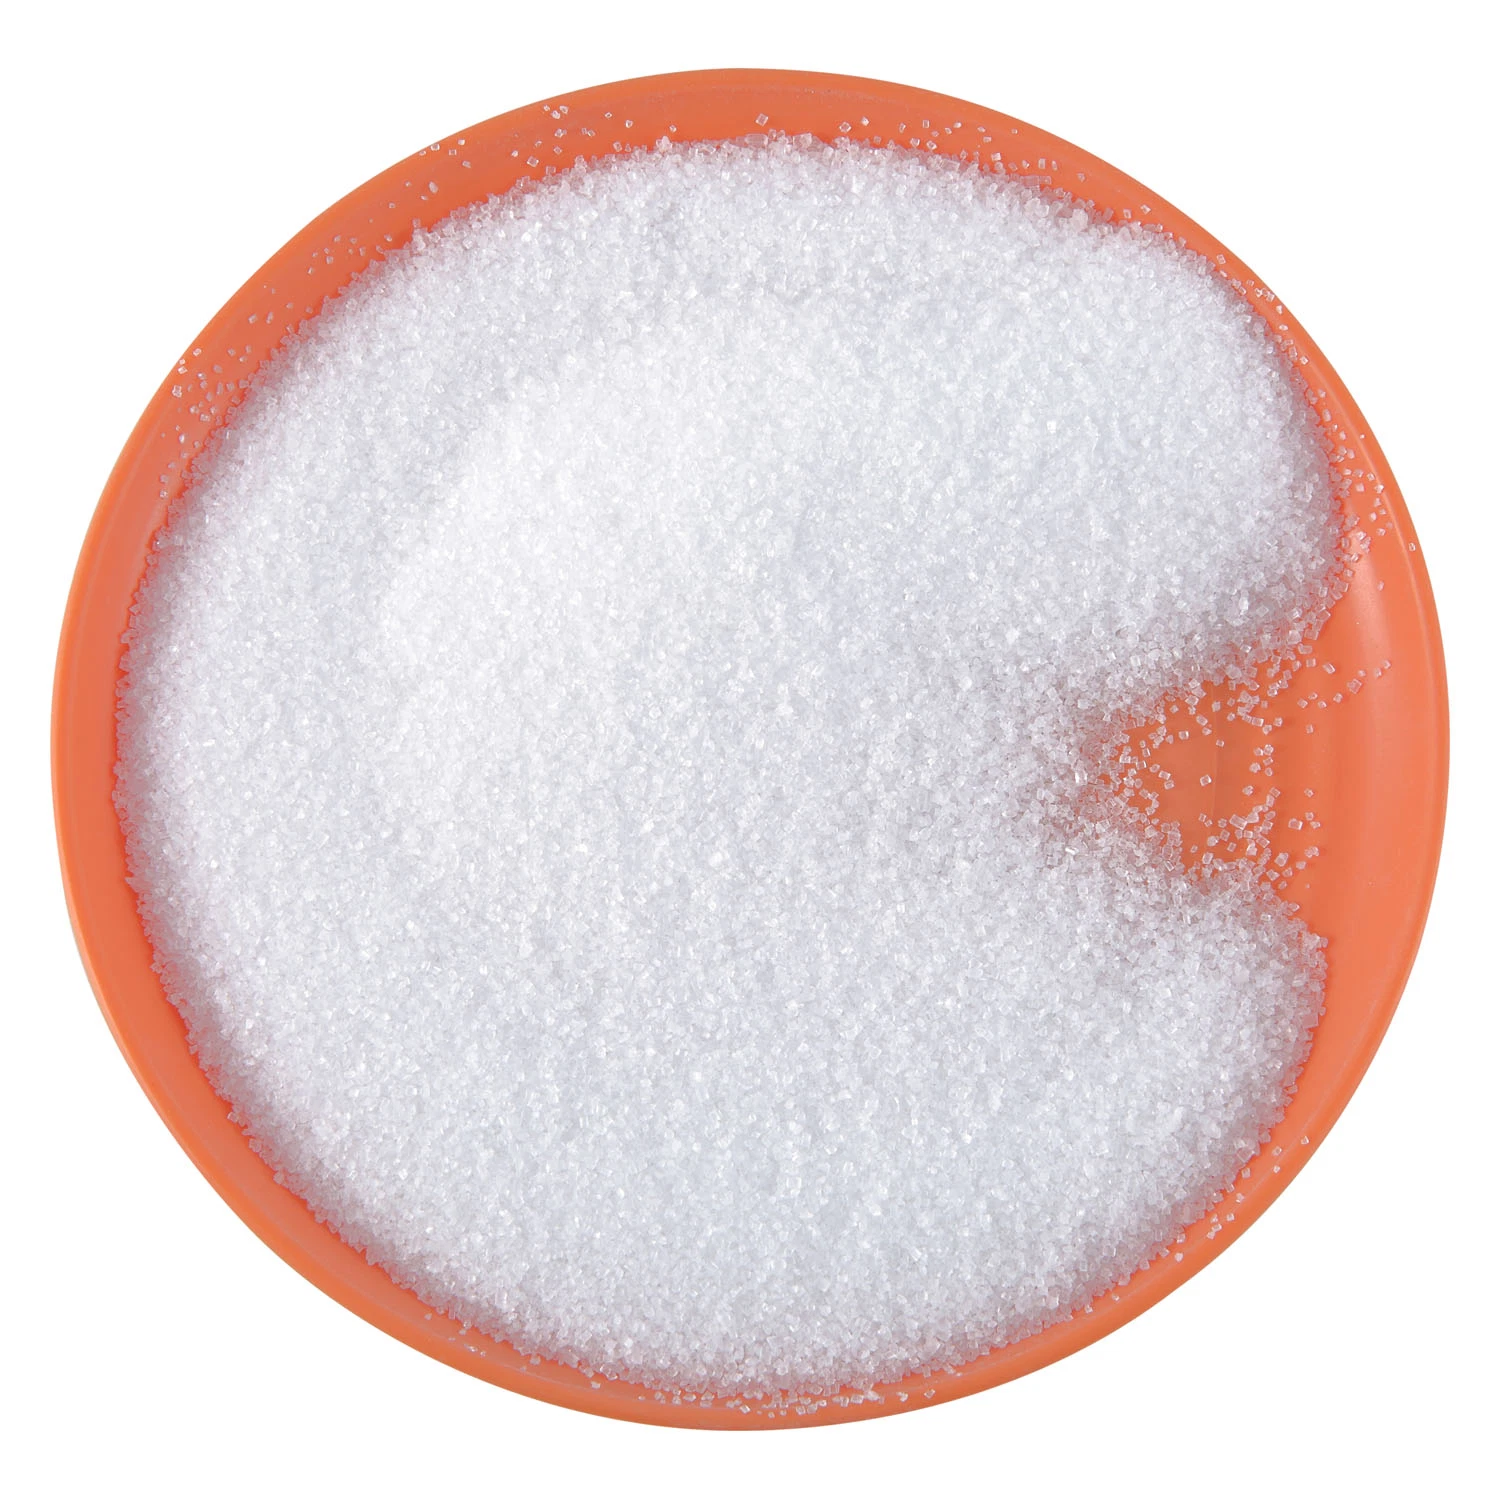 L'élément minéral d'Additifs alimentaires MSP Mono Phosphate de sodium